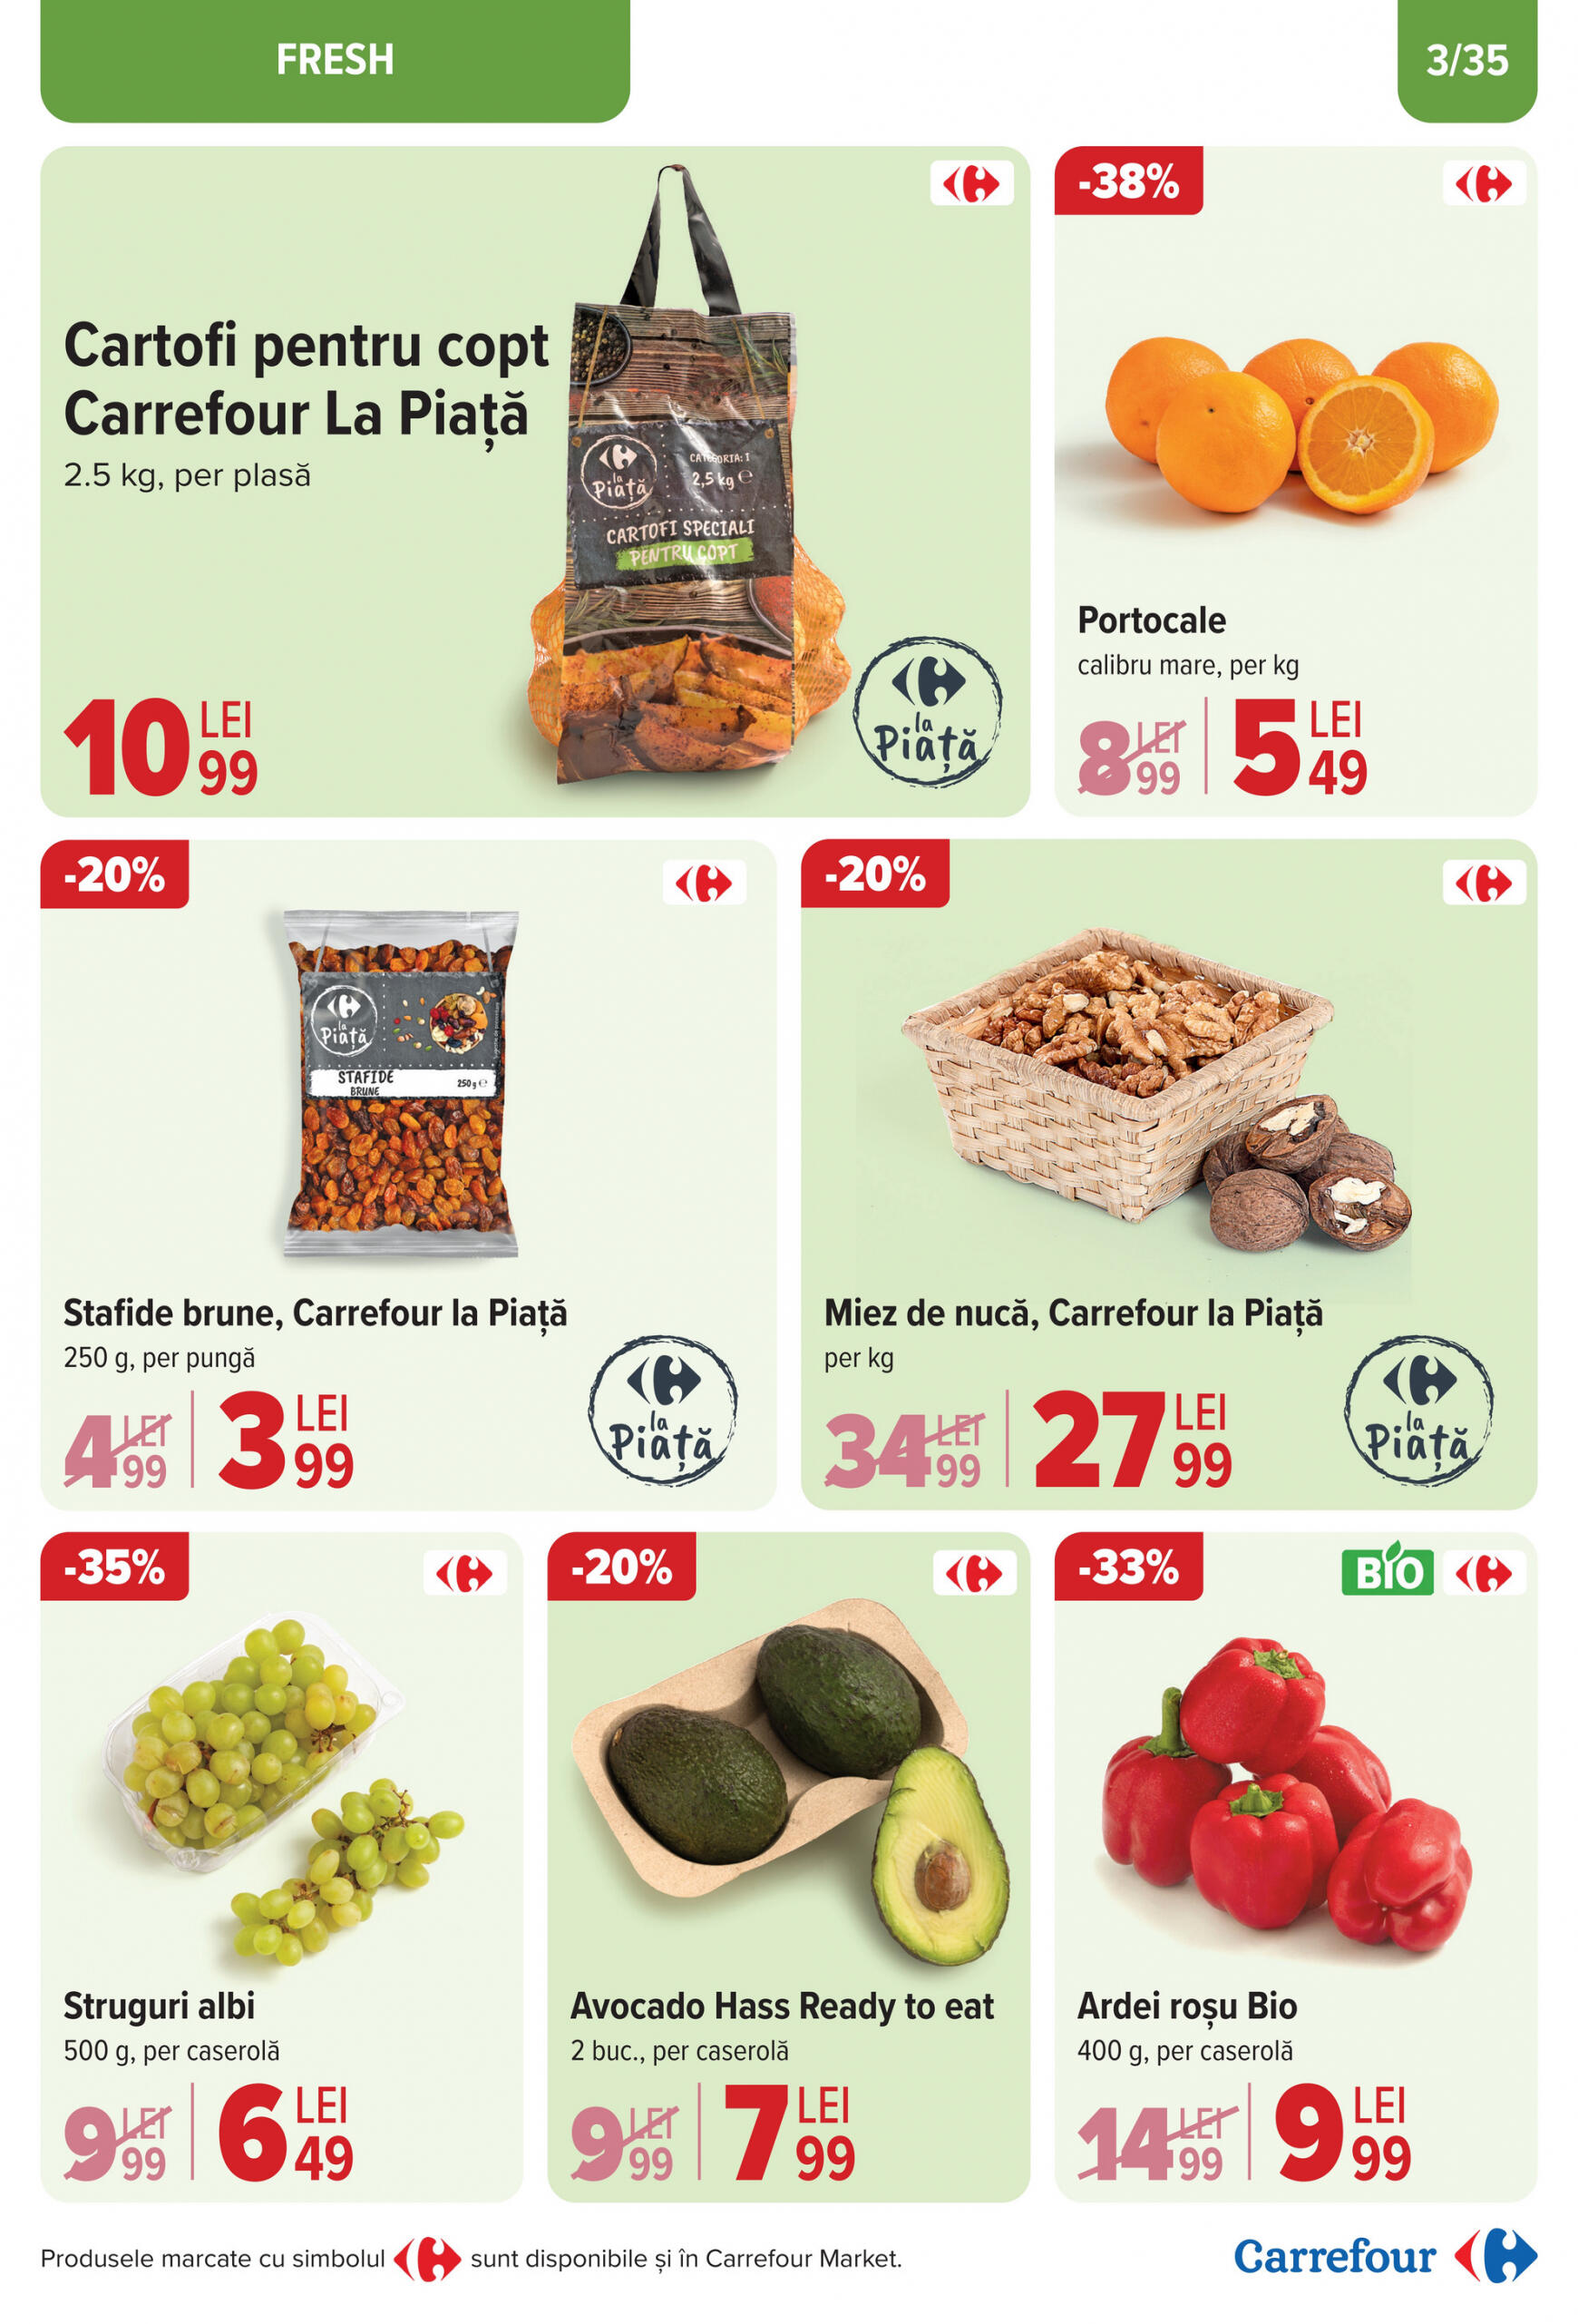 carrefour - Catalog nou Carrefour 17.04. - 28.04. - page: 3